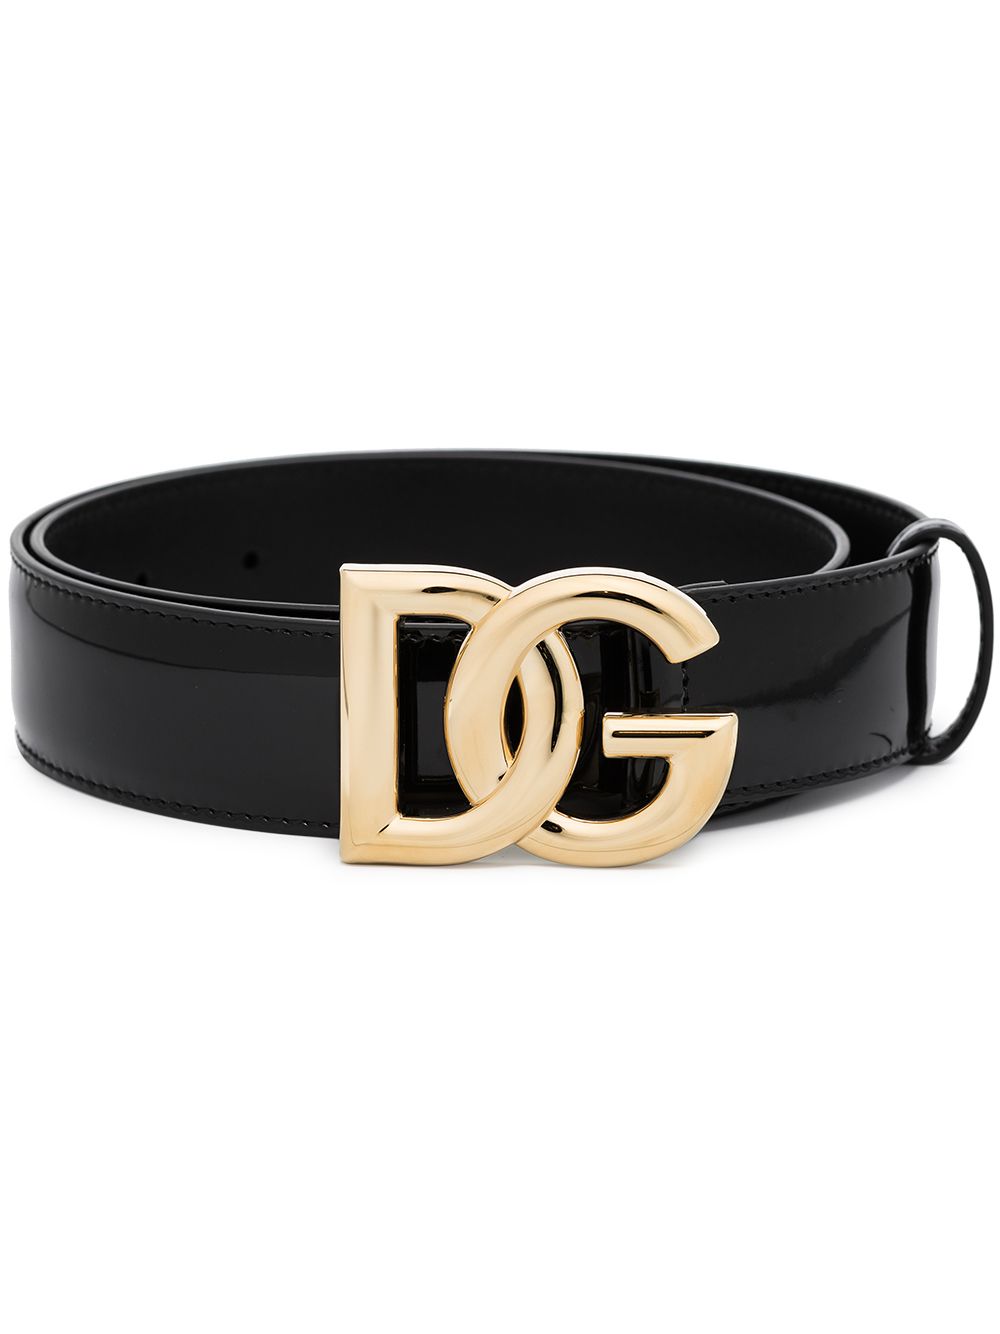 Dolce & Gabbana DG logo leather belt - Black von Dolce & Gabbana